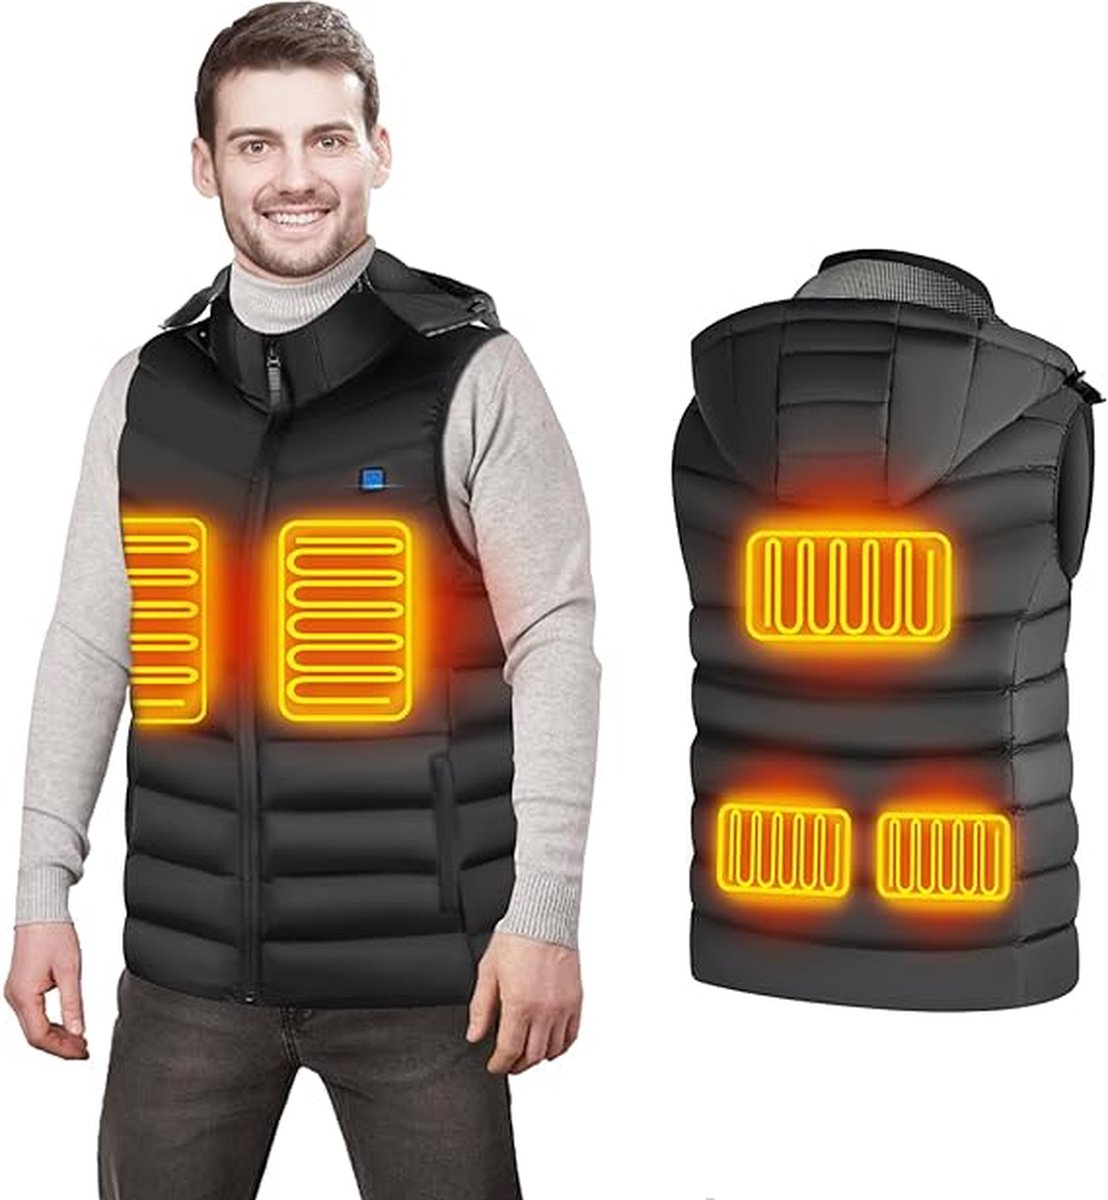 USB verwarmd vest - Voor dames en heren - Maat XXL - Bodywarmer met 3 warmte niveaus - 5 verwarming zones - Afneembare capuchon - Verstelbare temperatuur - Zwart